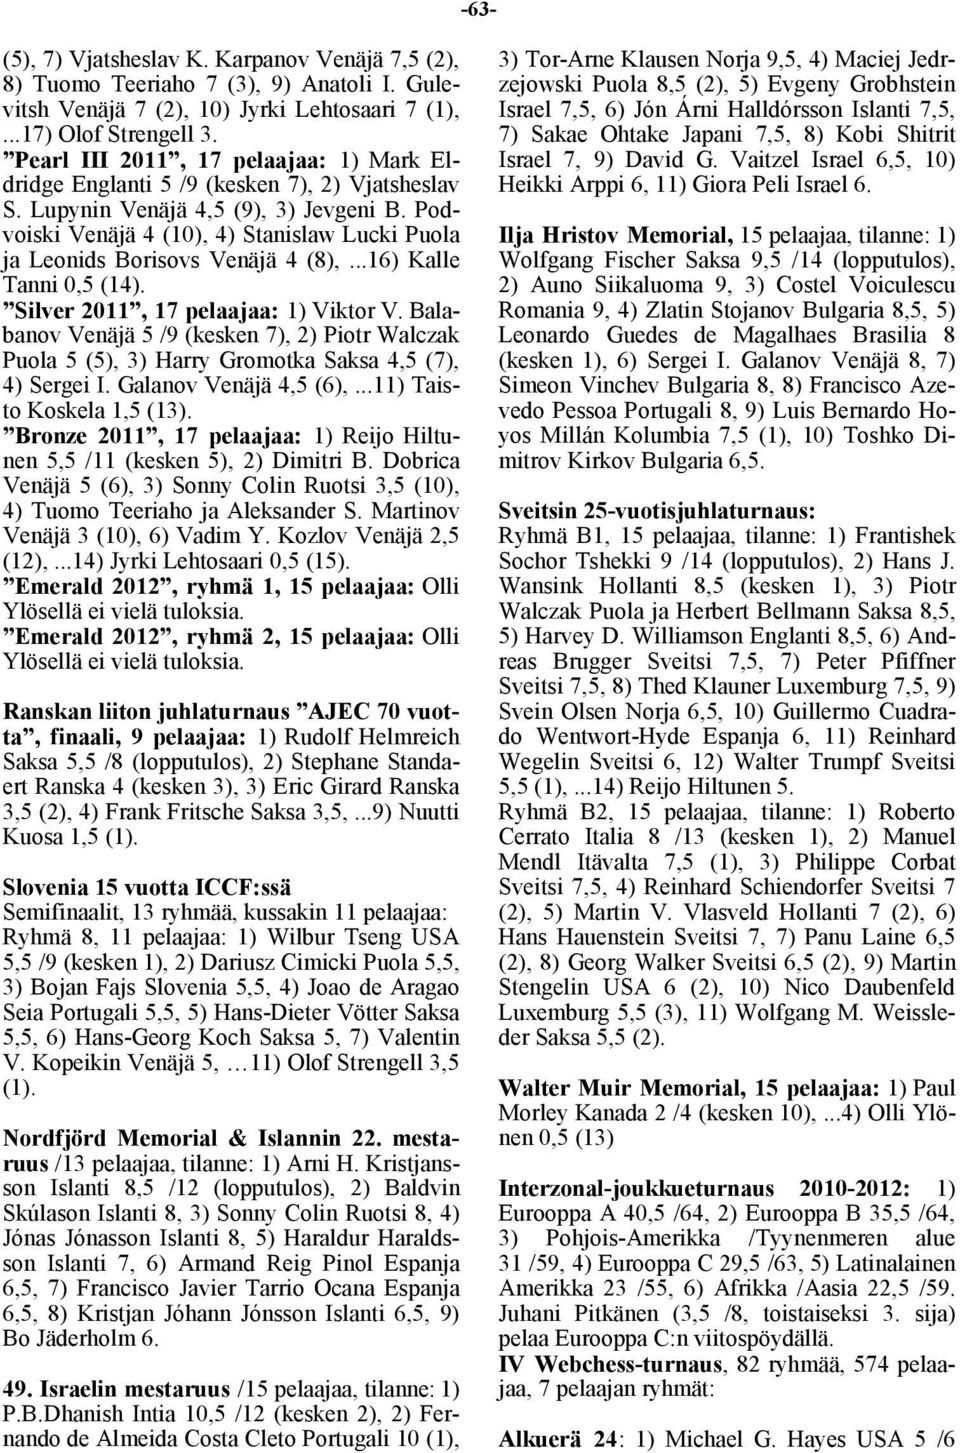 Podvoiski Venäjä 4 (10), 4) Stanislaw Lucki Puola ja Leonids Borisovs Venäjä 4 (8),...16) Kalle Tanni 0,5 (14). Silver 2011, 17 pelaajaa: 1) Viktor V.